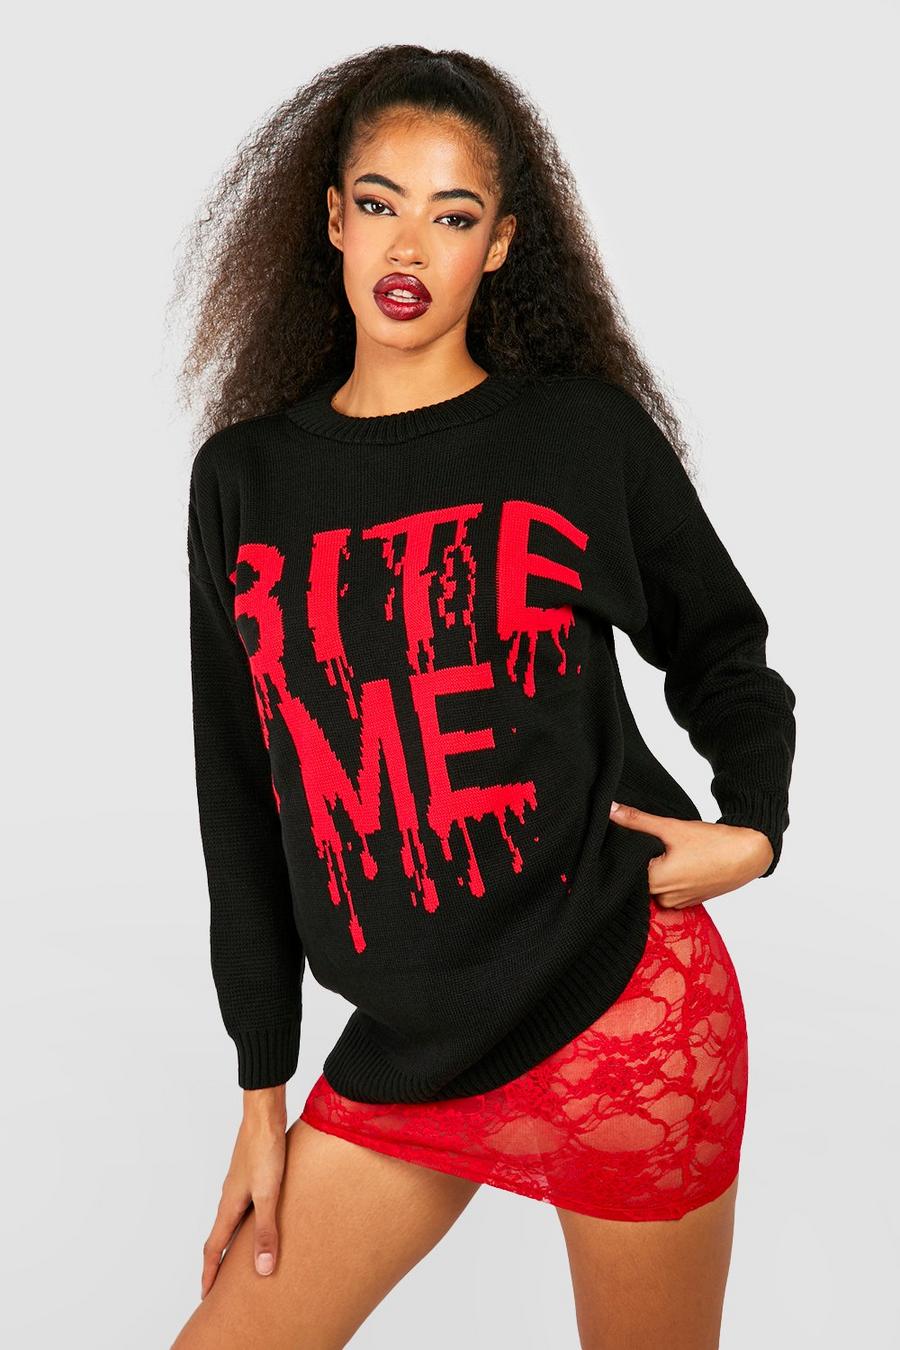 Maglione di Halloween con slogan Bite Me, Black